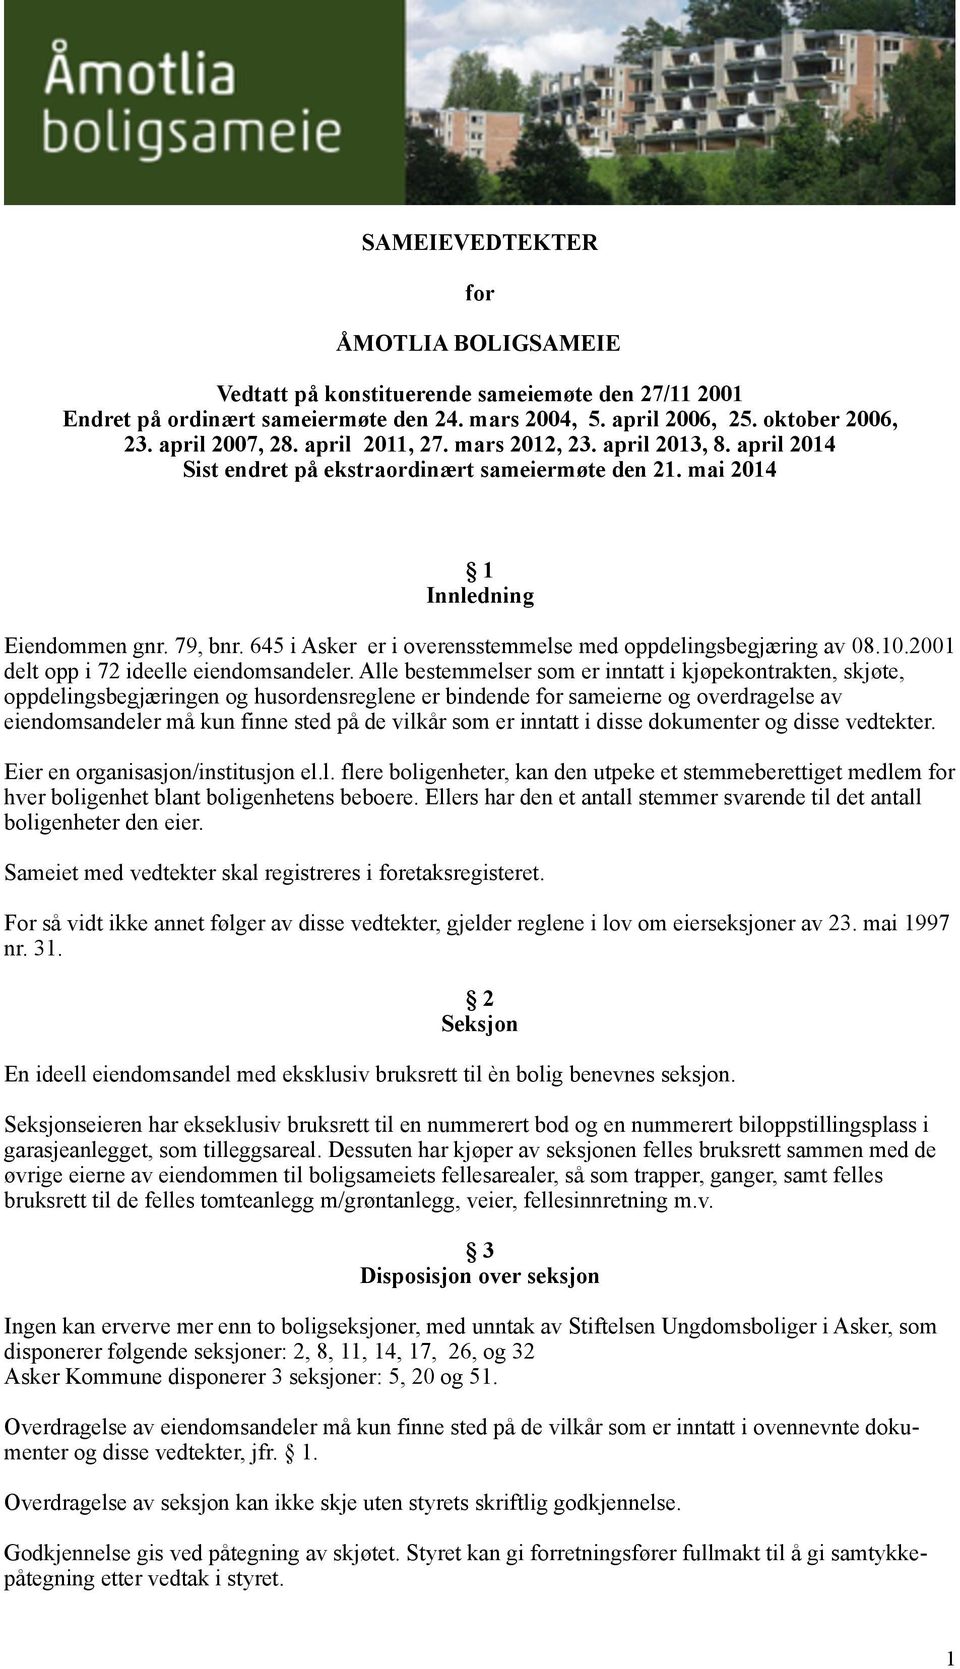 645 i Asker er i overensstemmelse med oppdelingsbegjæring av 08.10.2001 delt opp i 72 ideelle eiendomsandeler.